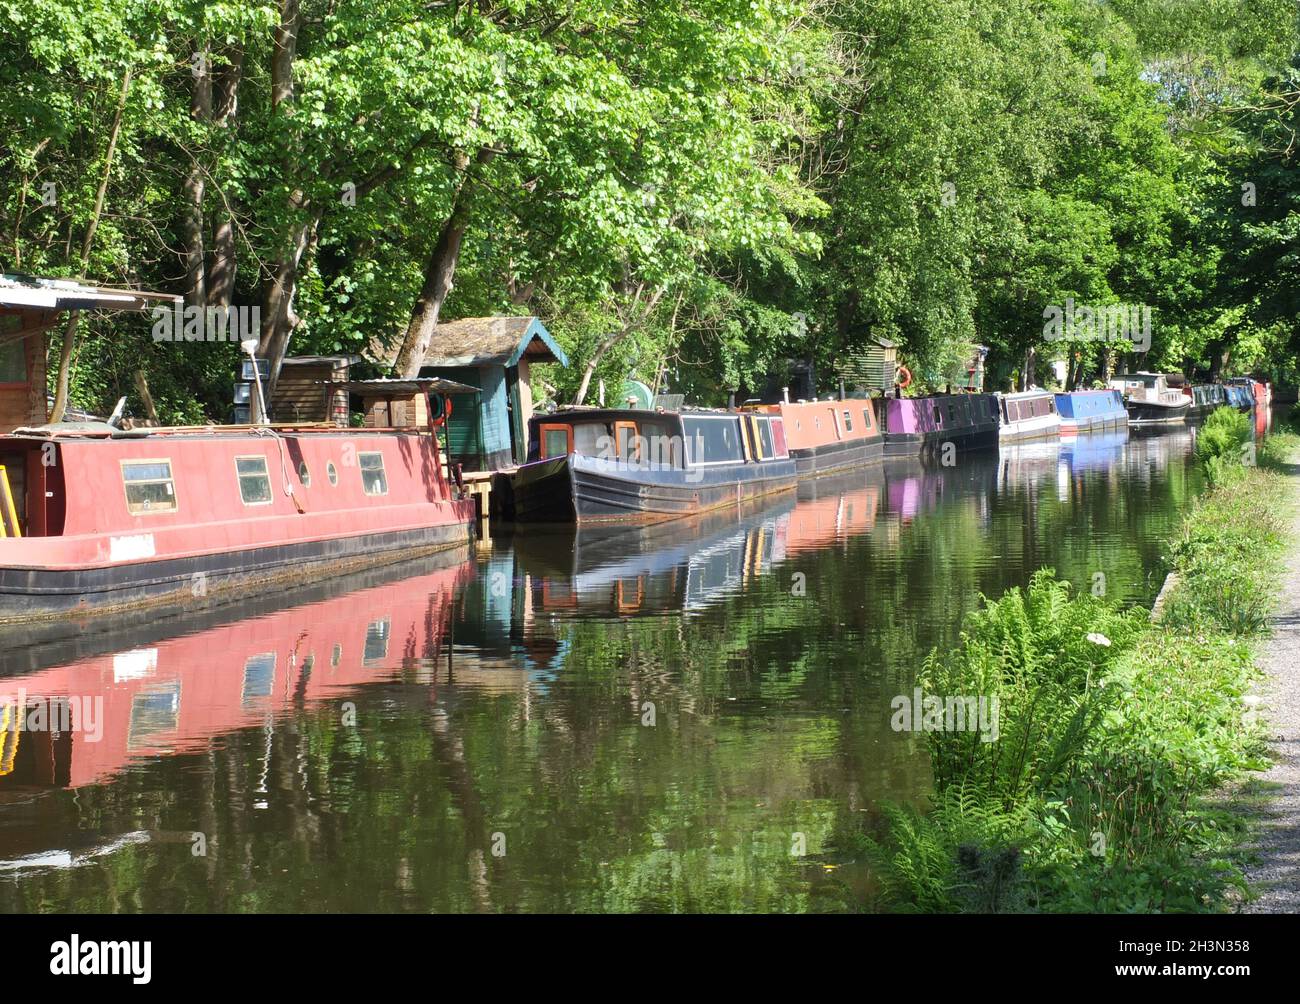 Barcos antiguos del canal amarrados en el canal rochdale cerca del puente hebden rodeado de árboles bajo la luz del sol en verano Foto de stock